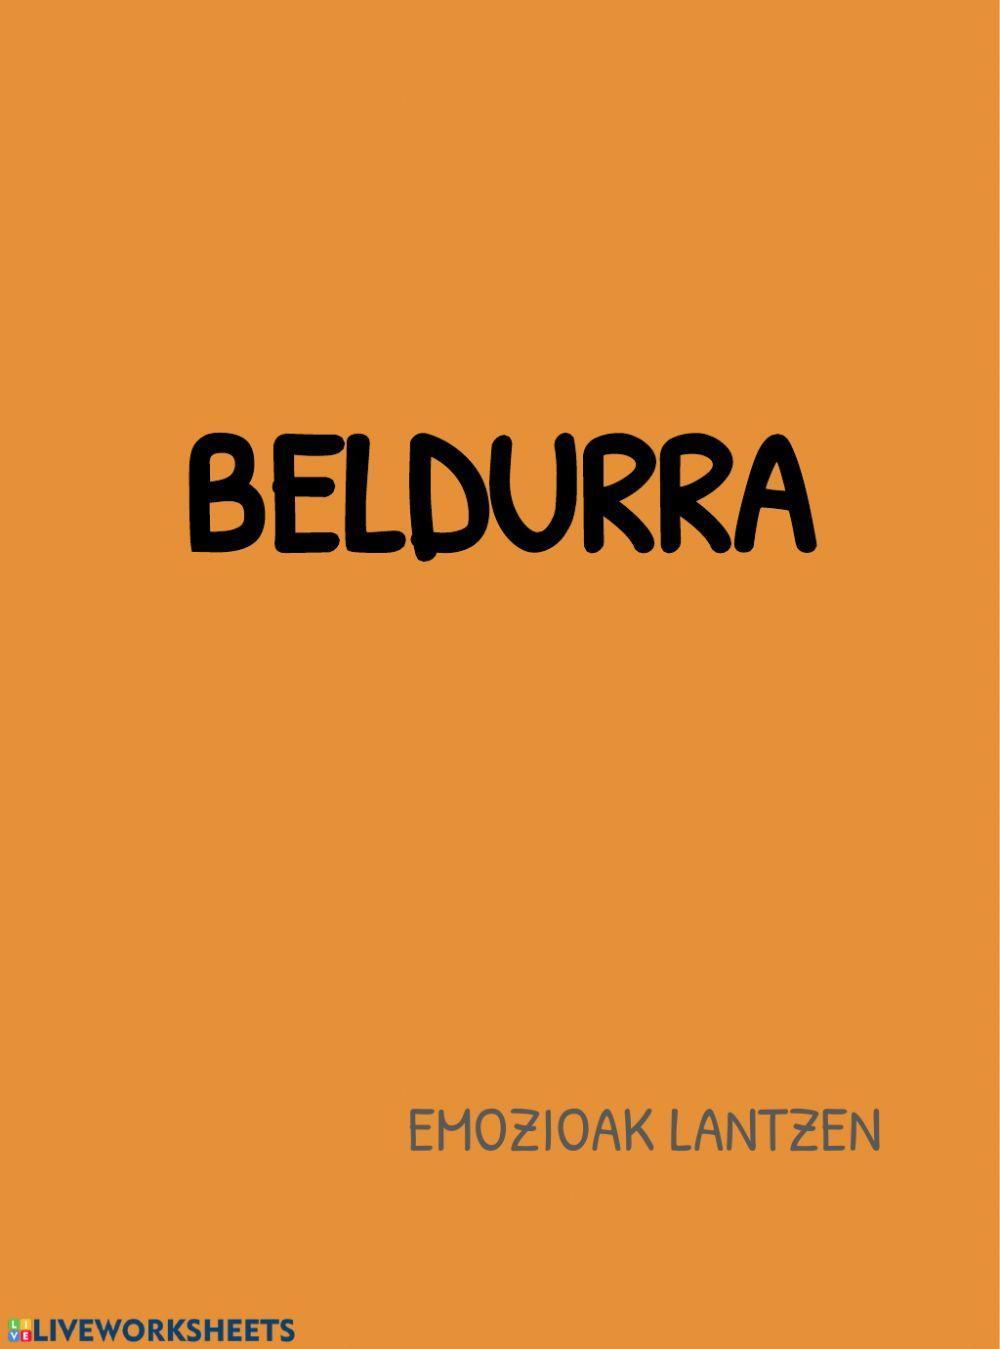 Beldurra